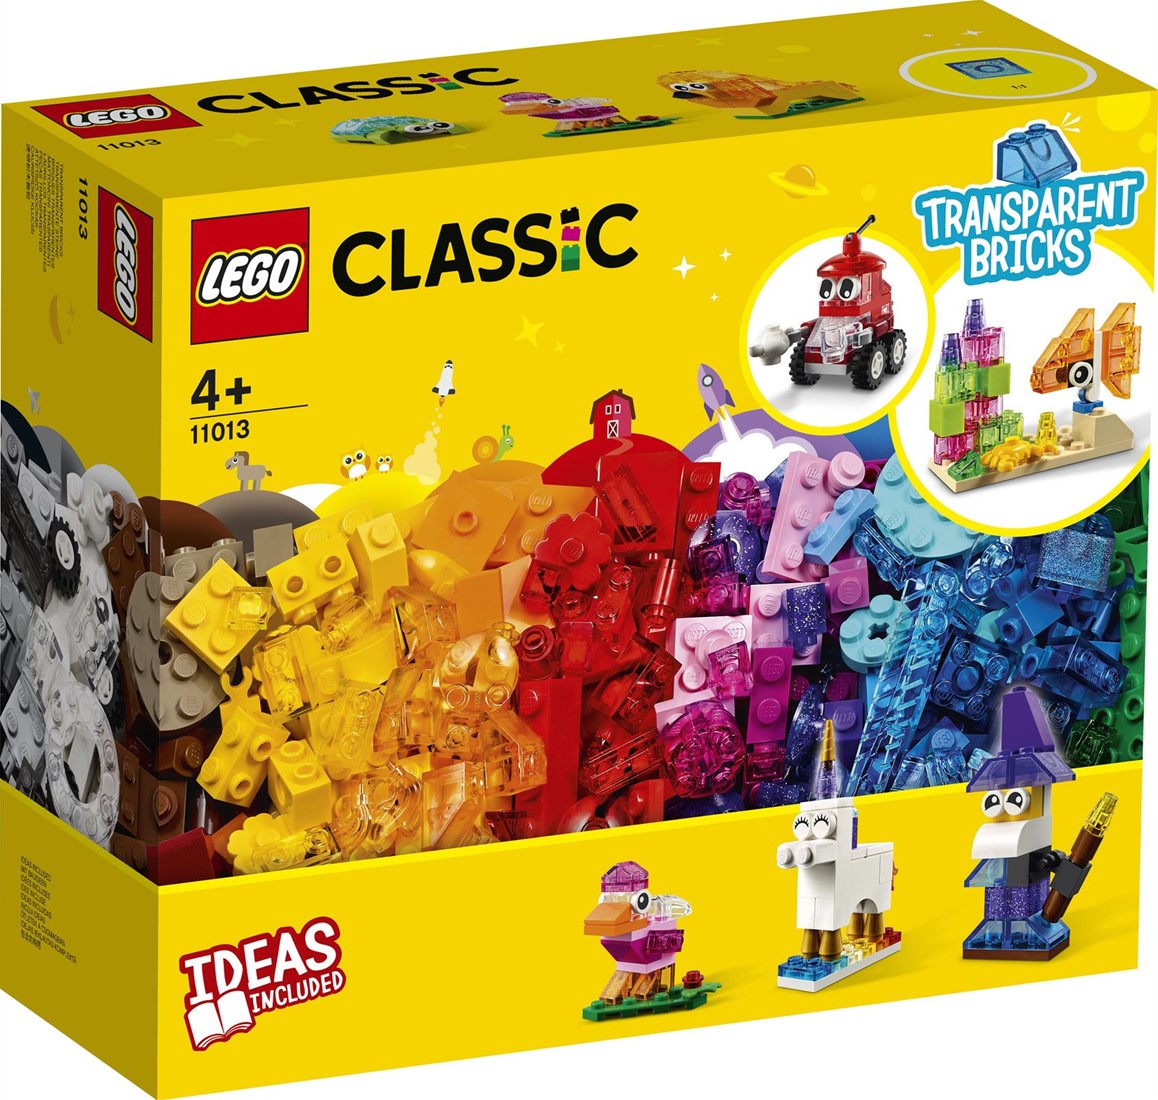 Fantasierijk klein Voorafgaan LEGO Classic Creatieve transparante stenen - 11013 kopen?